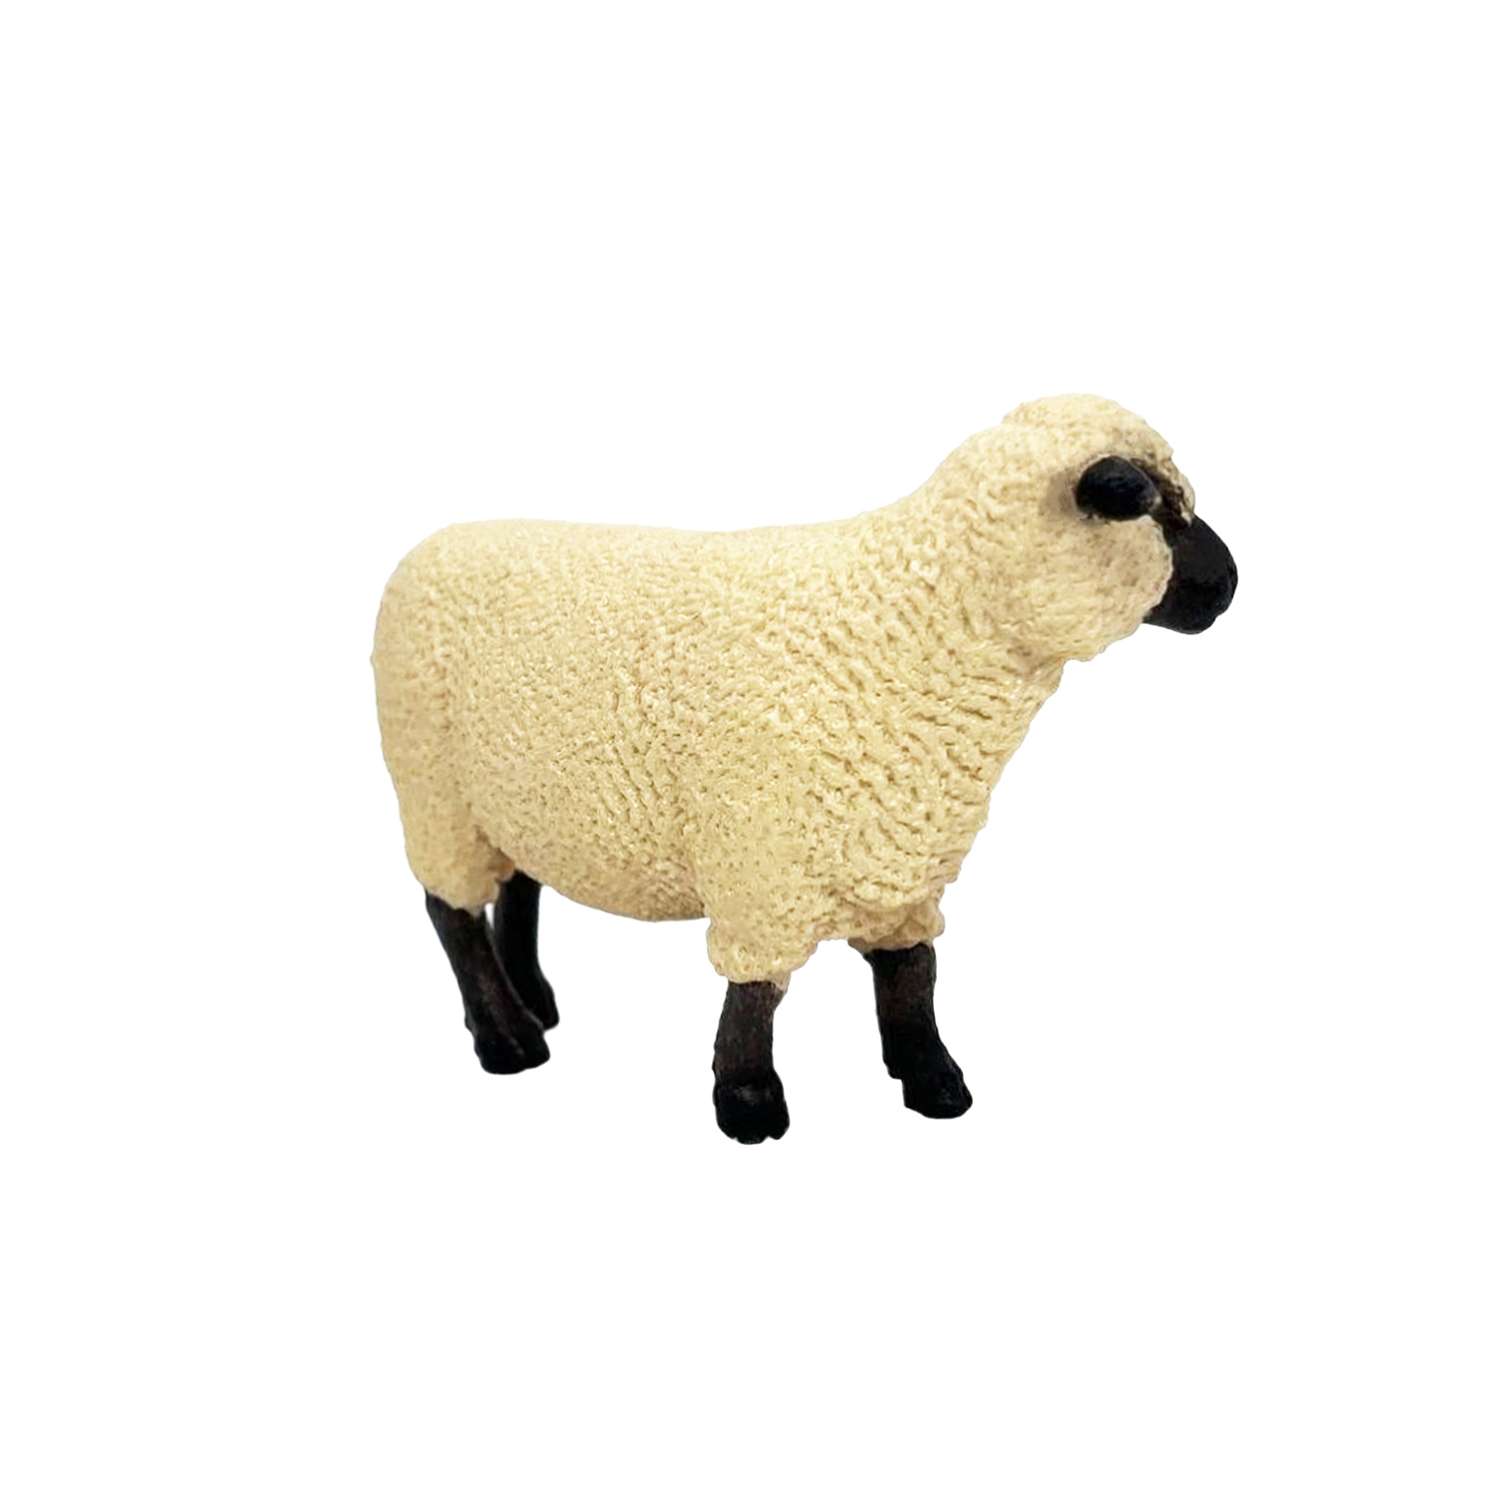 Фигурка животного Детское Время Овца породы Шропшир - фото 5